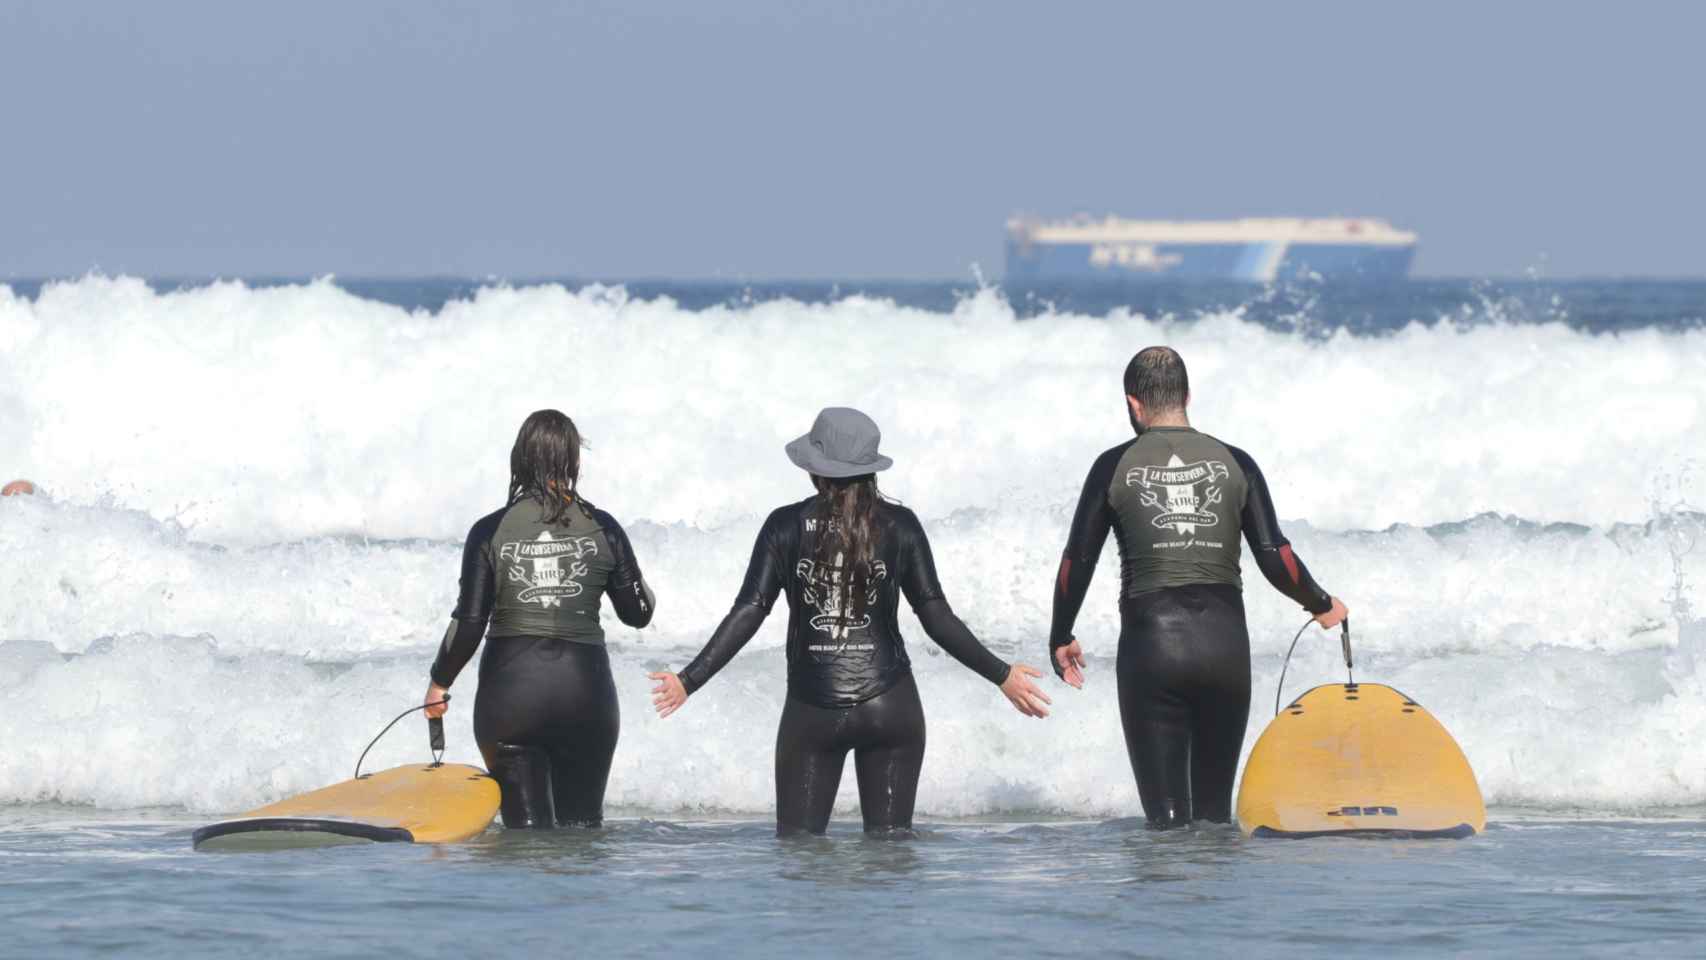 La Conservera del Surf: cuidando y compartiendo la cultura surfista desde Vigo